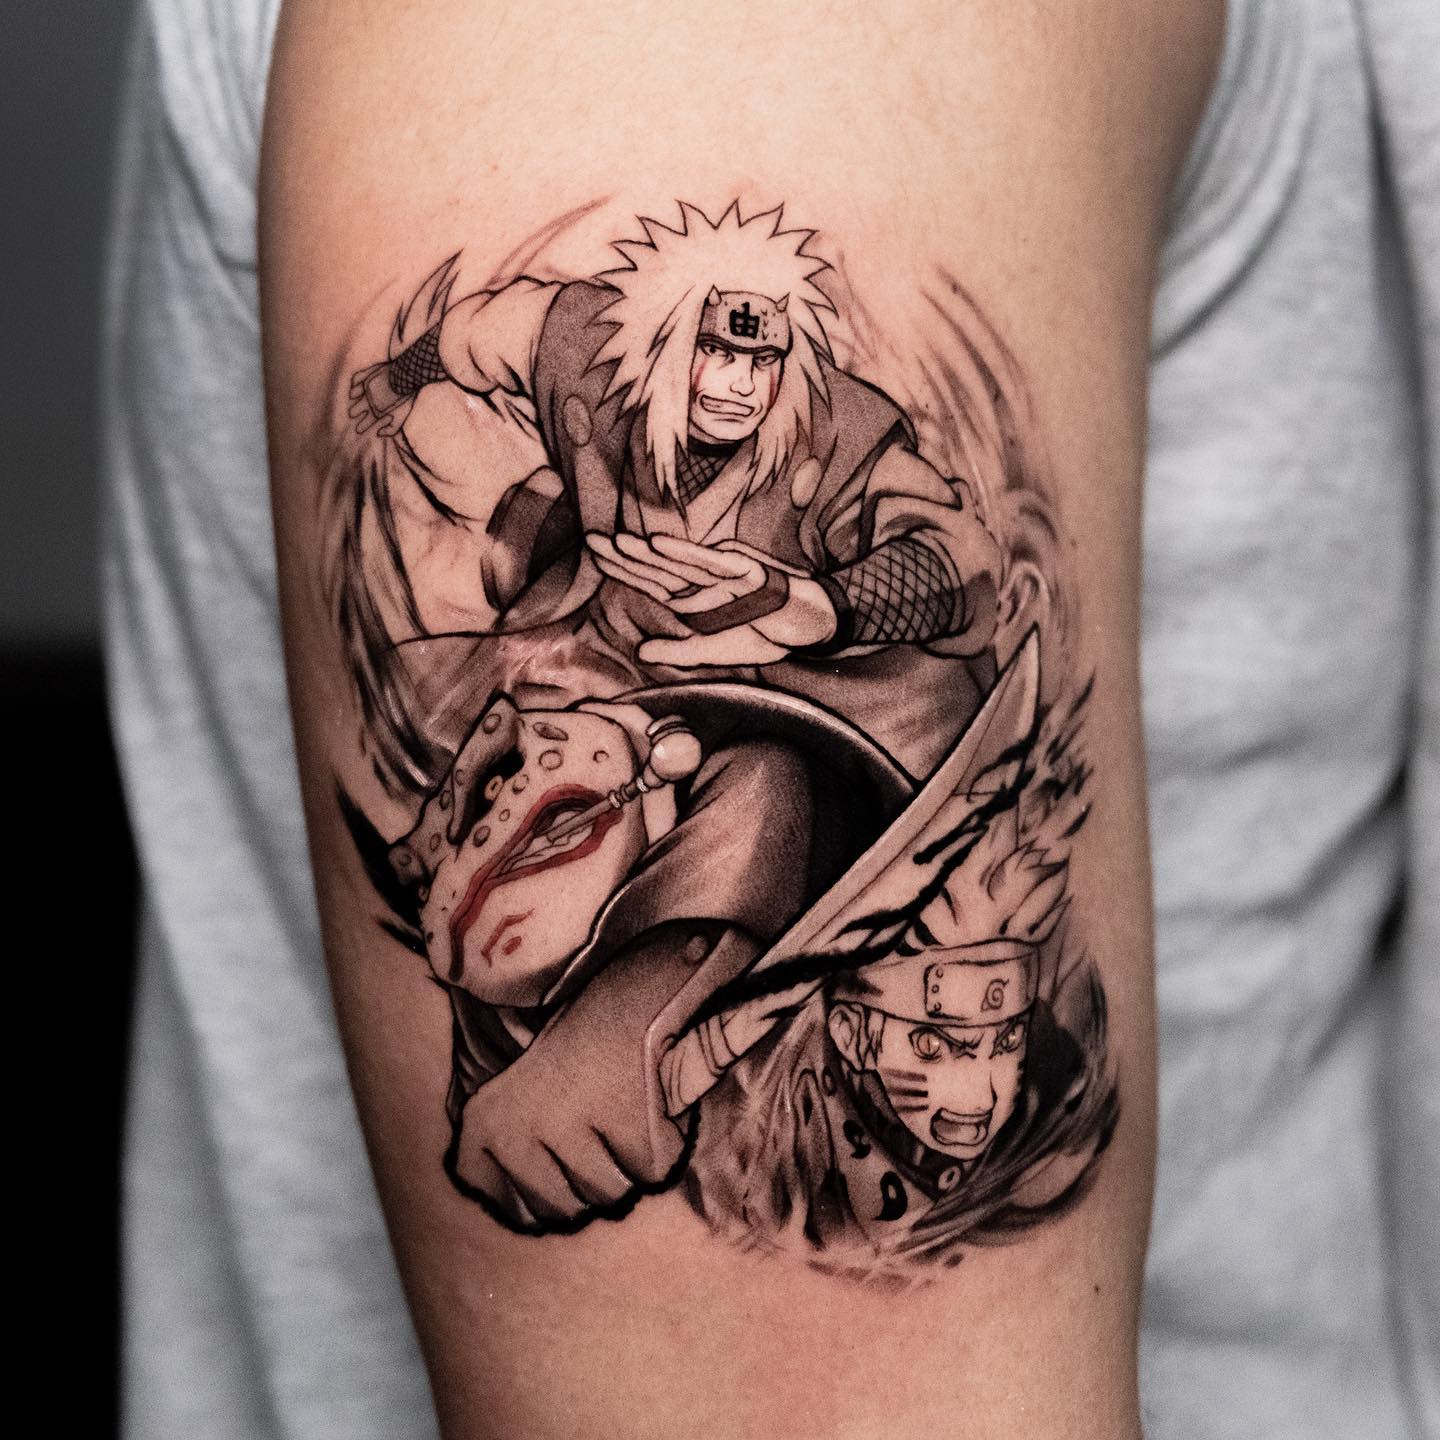 Naruto and Jiraiya Tattoo on Arm